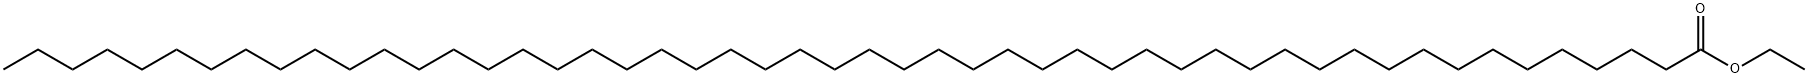 Pentacontanoic acid ethyl ester Structure